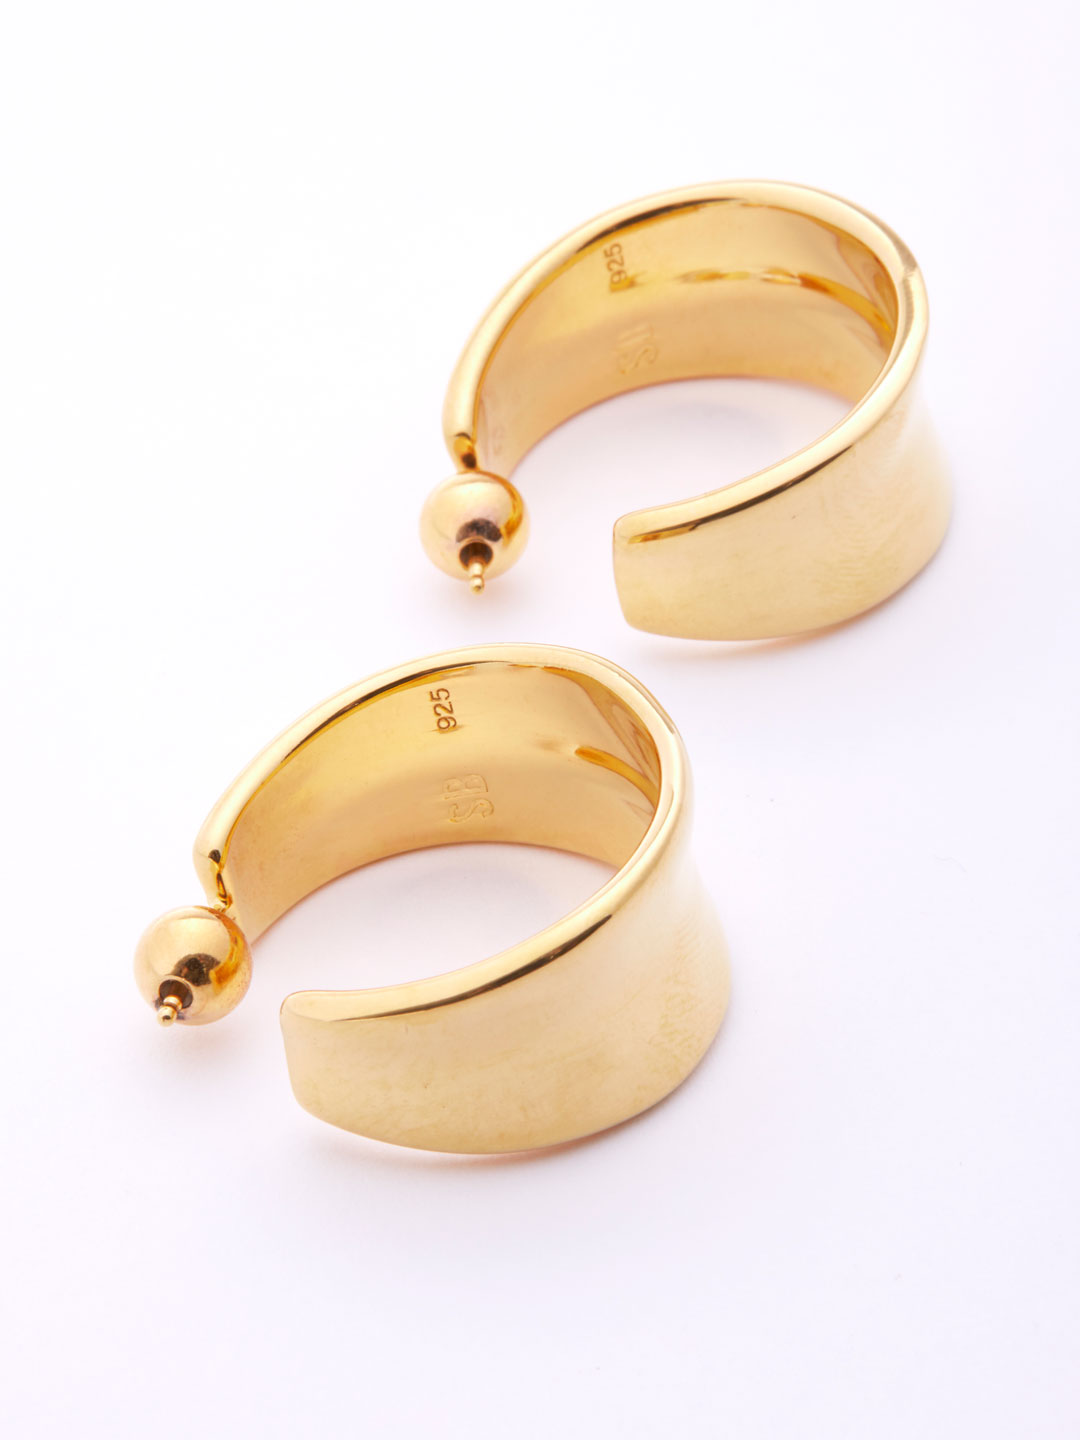 Gold Wave Hoops Pierced Earrings Large  - Gold